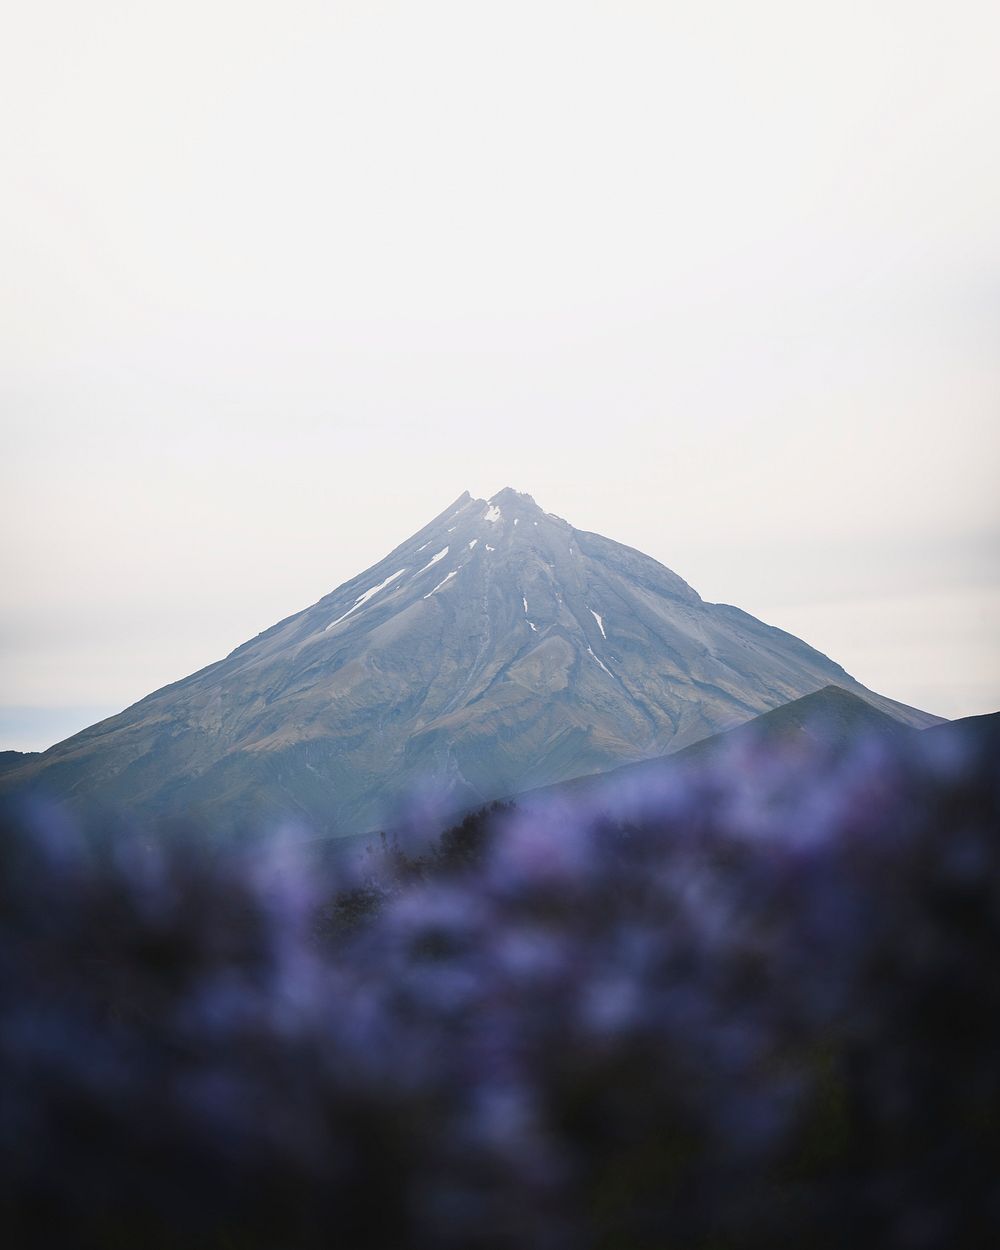 Beautiful landscape of Mount Taranaki, New Zealand